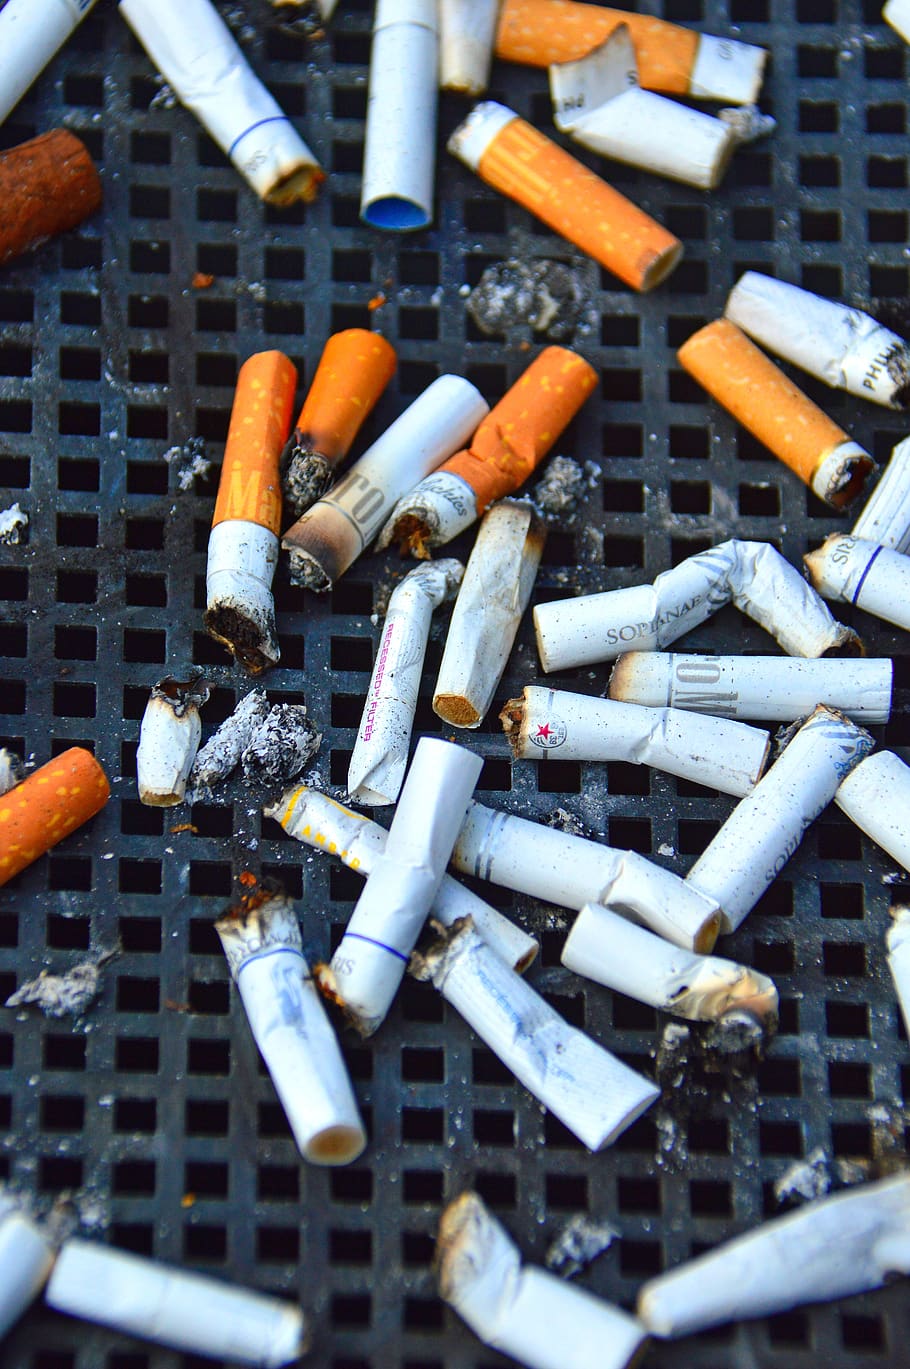 cig, cigarrillo, chic, colillas, nicotina, fumar, salud, estilo de vida, tabaco, hábito